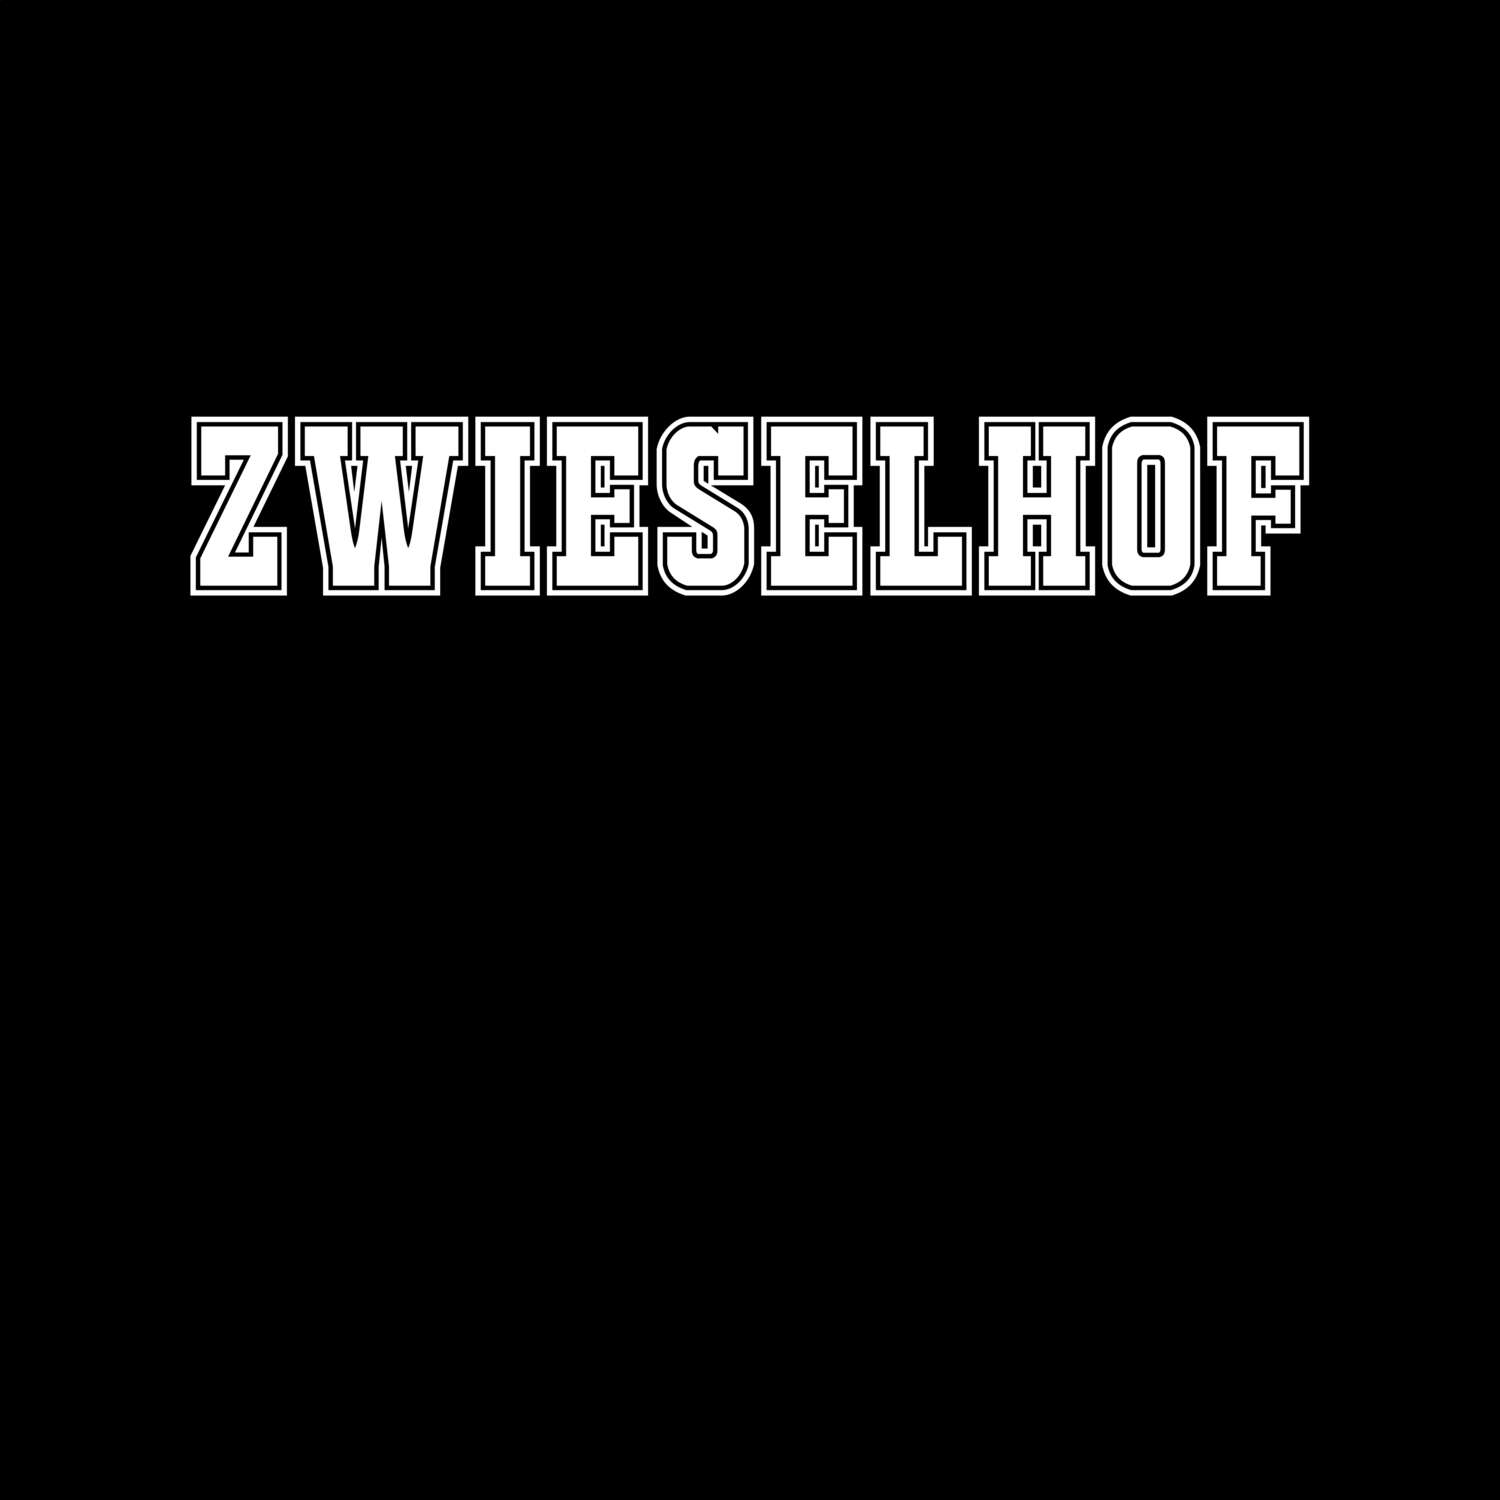 Zwieselhof T-Shirt »Classic«